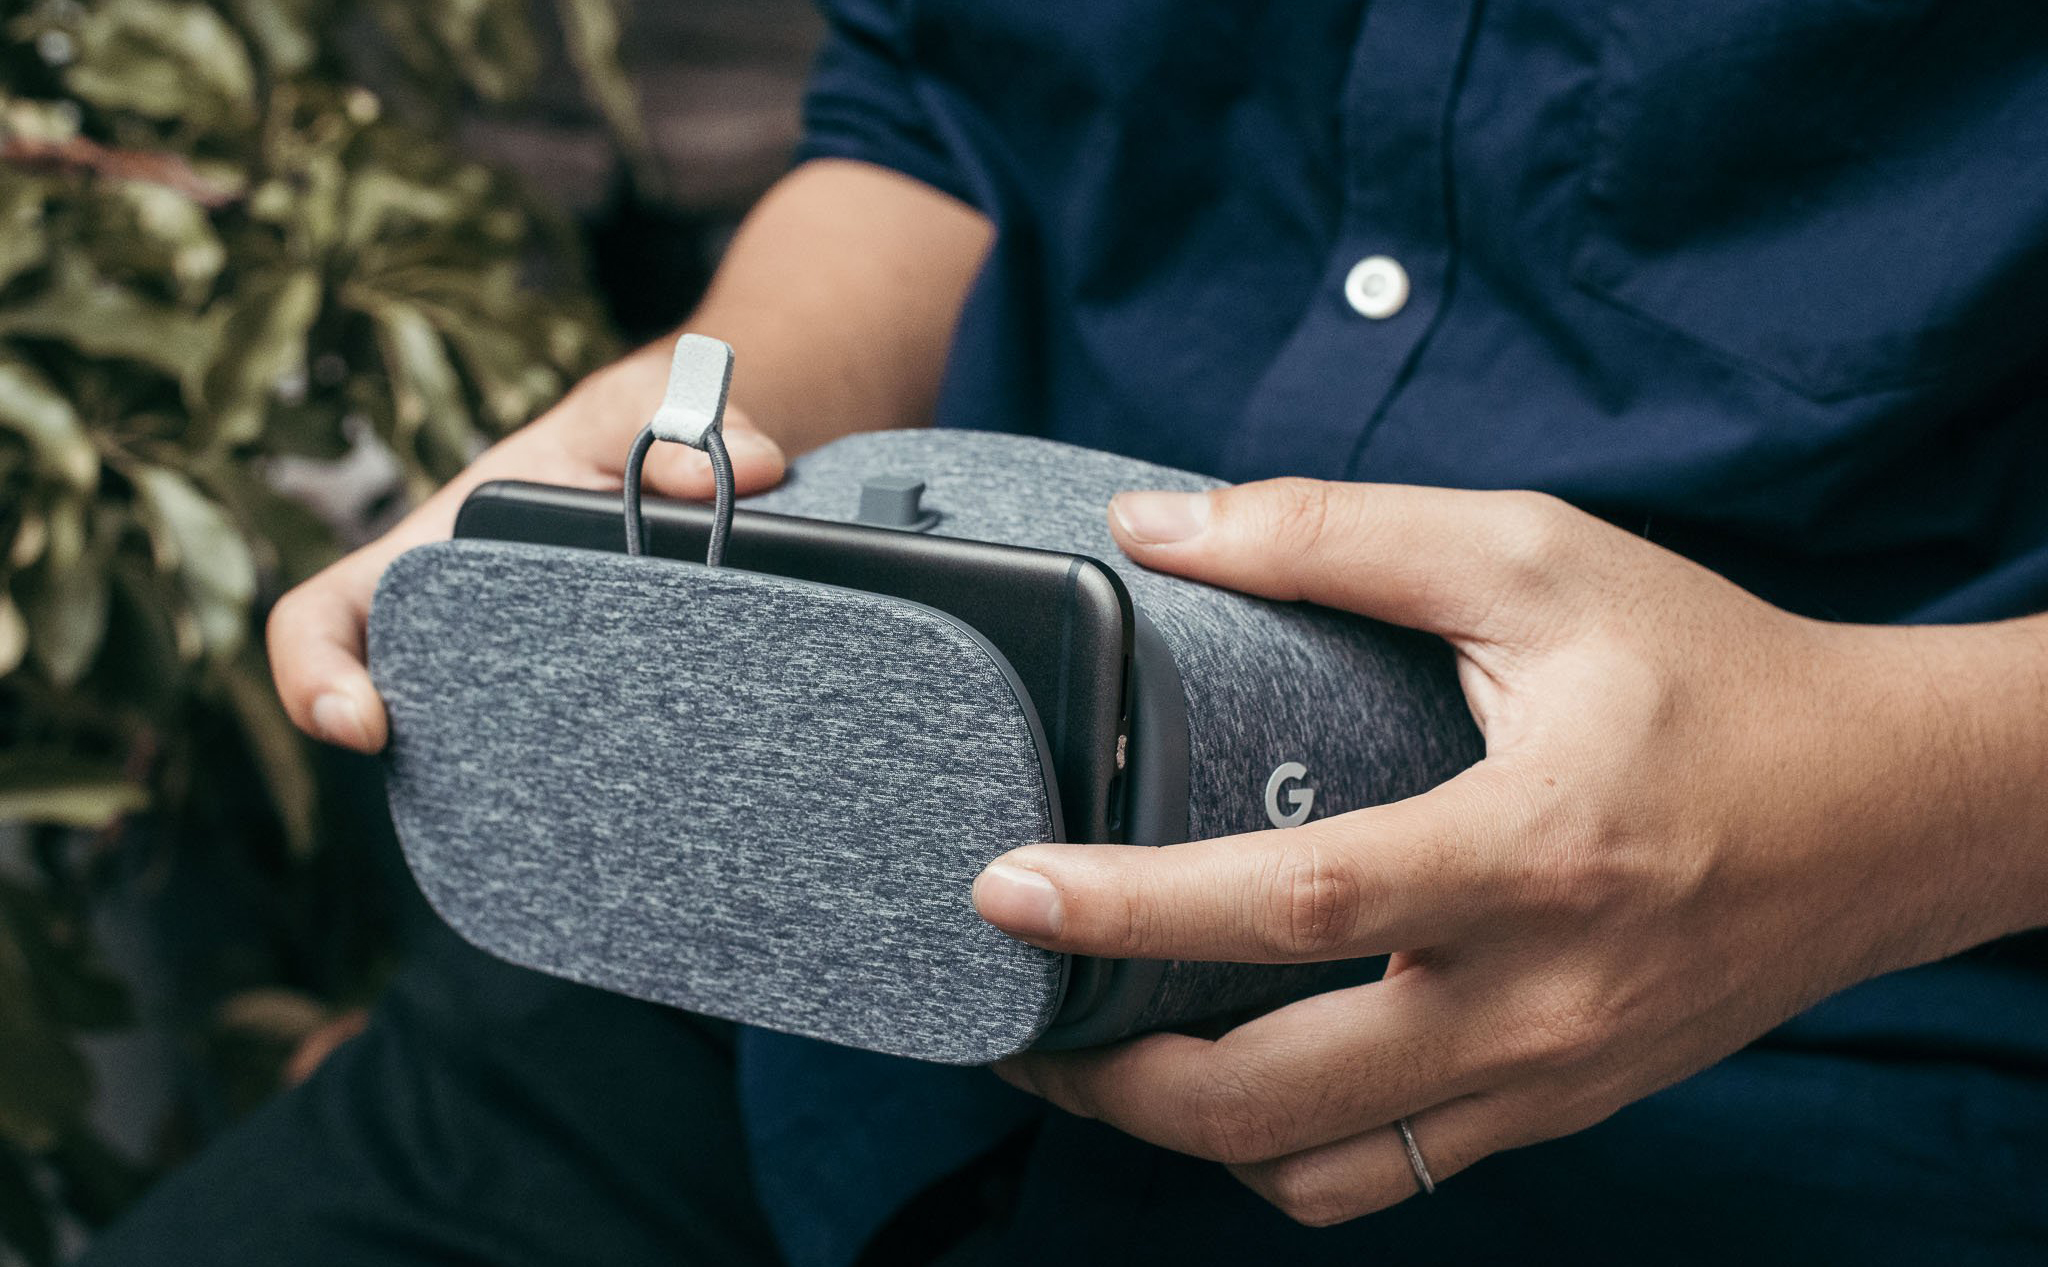 Giải pháp VR từ smartphone Daydream chính thức bị Google khai tử